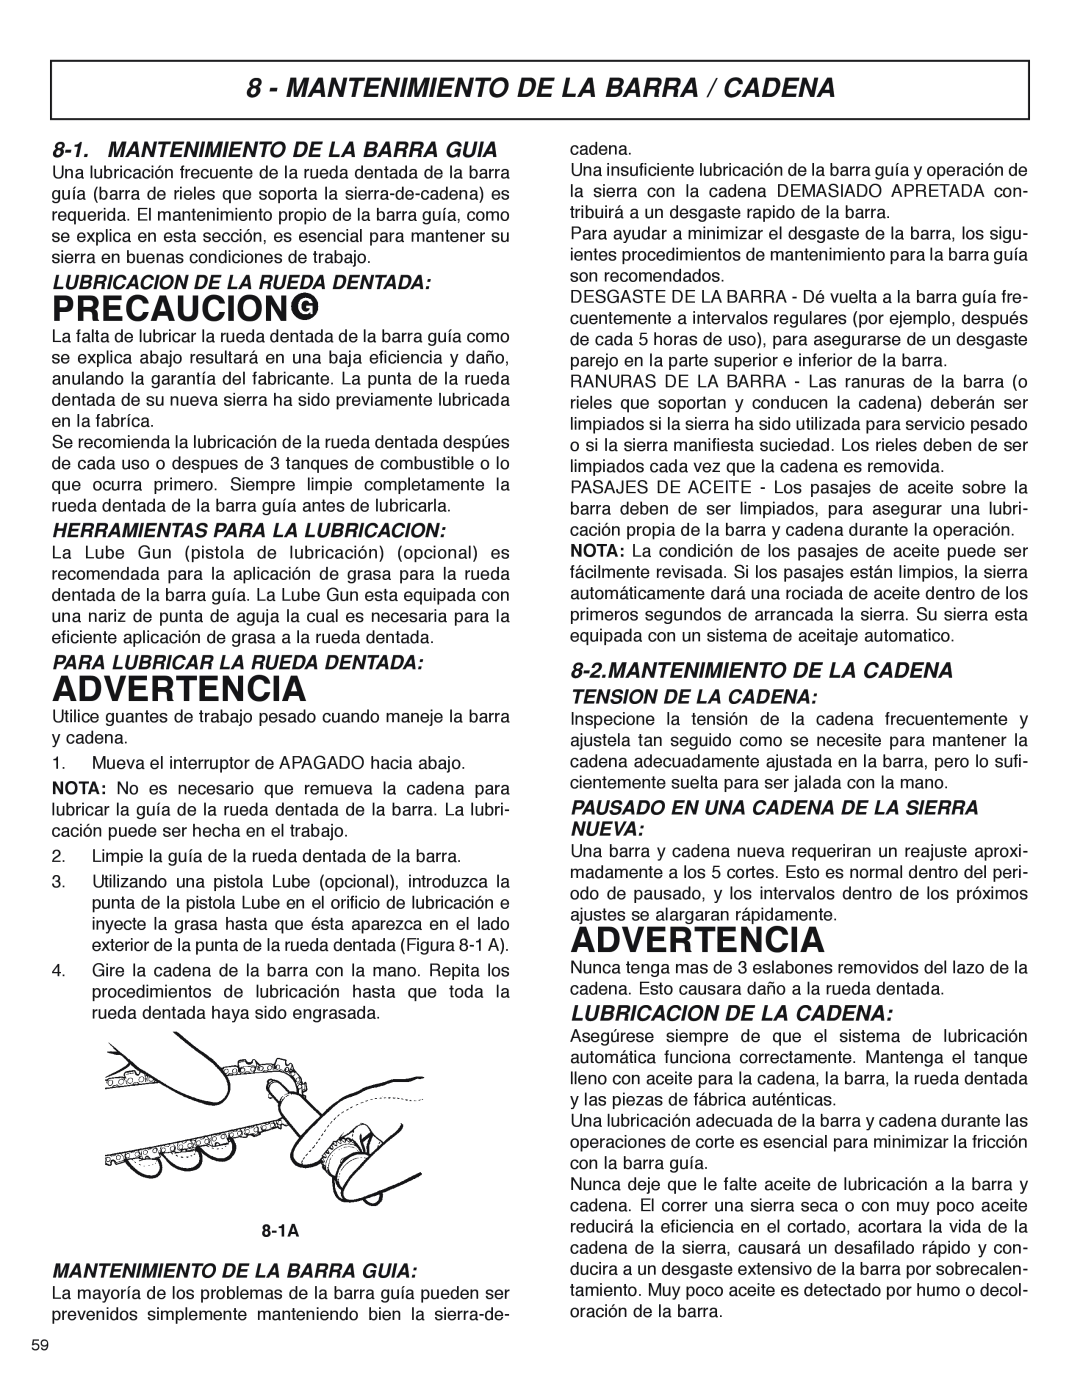 McCulloch MS4016PAVCC, MS4018PAVCC Mantenimiento De La Barra / Cadena, Mantenimiento De La Barra Guia, Precaucion, 8-1A 